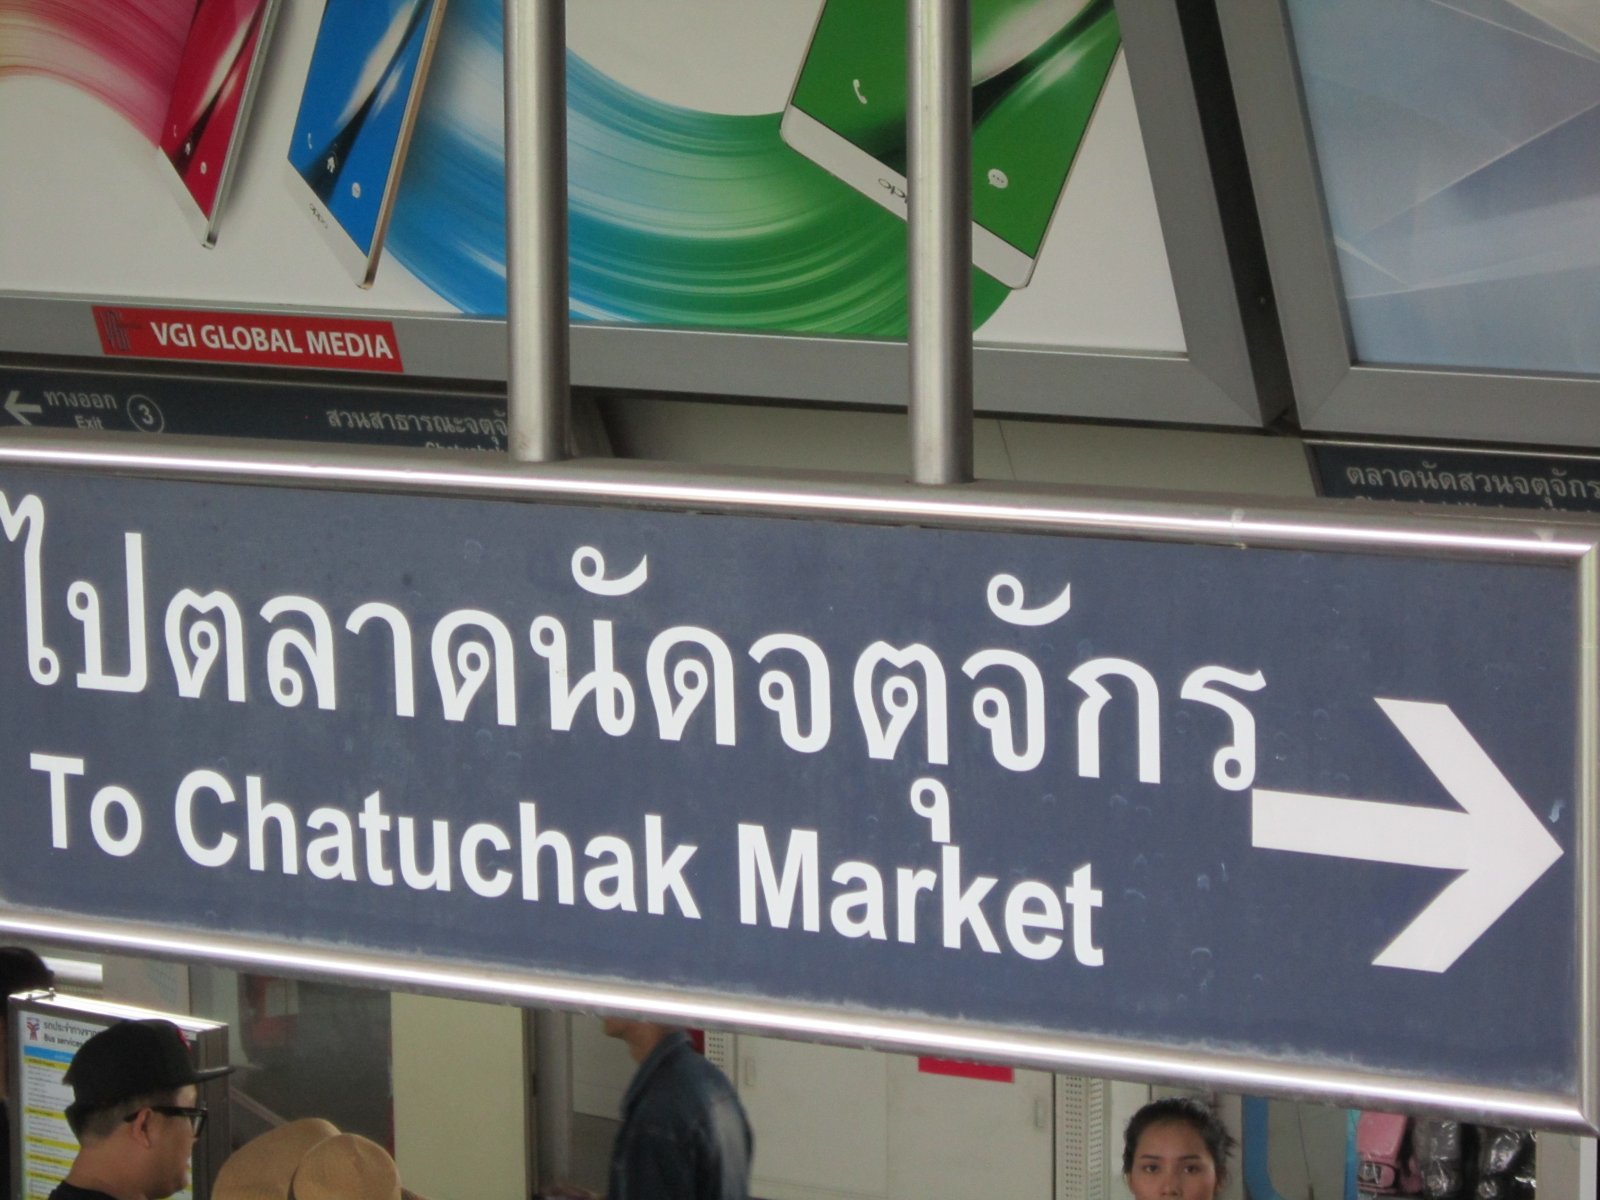 Tours to Chatuchak Market